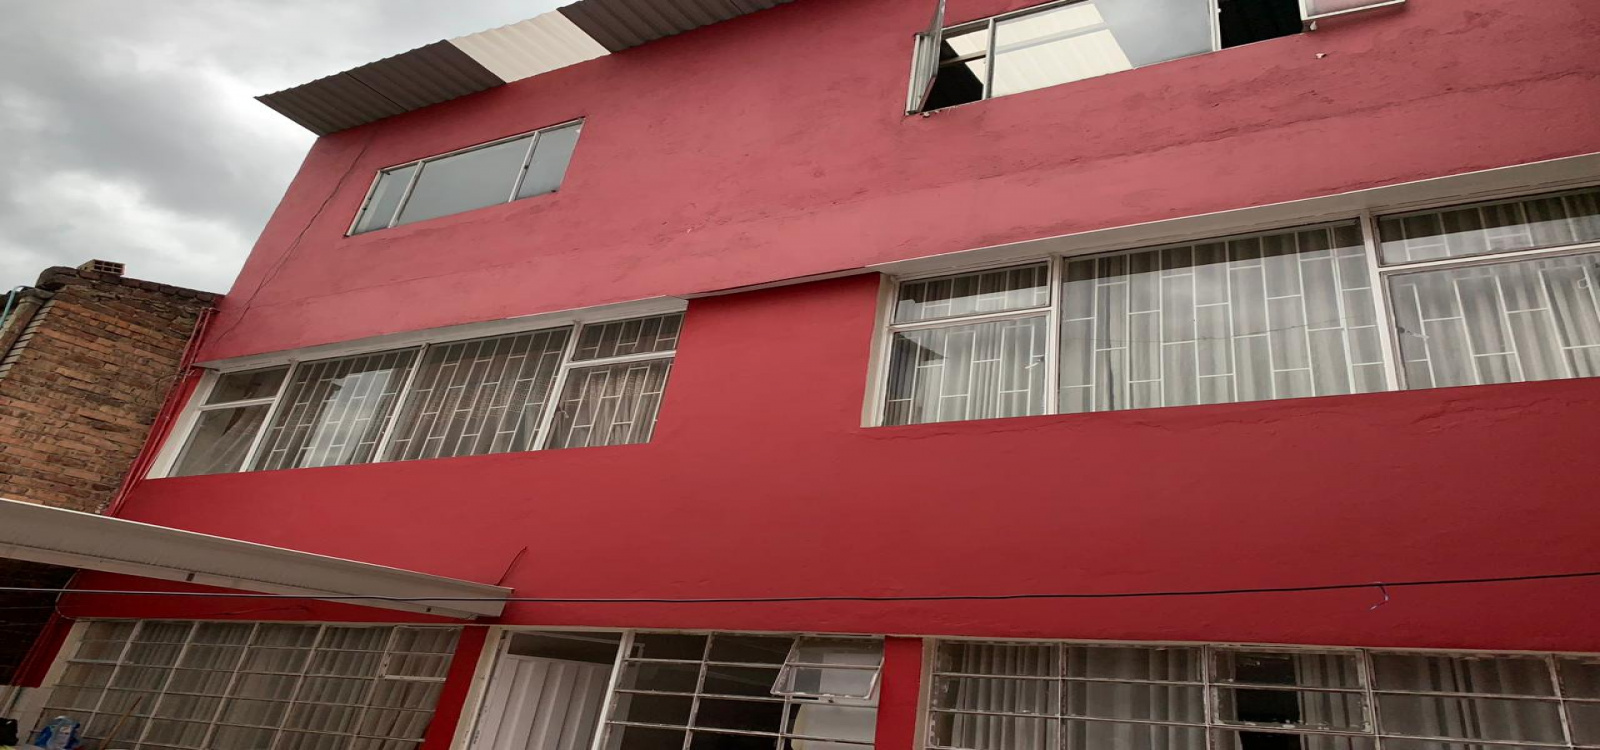 49 G 53 SUR CARRERA 6, Bogotá, Sur, Molinos Primer Sector, 6 Habitaciones Habitaciones,2 BathroomsBathrooms,Casas,Venta,CARRERA 6,3893